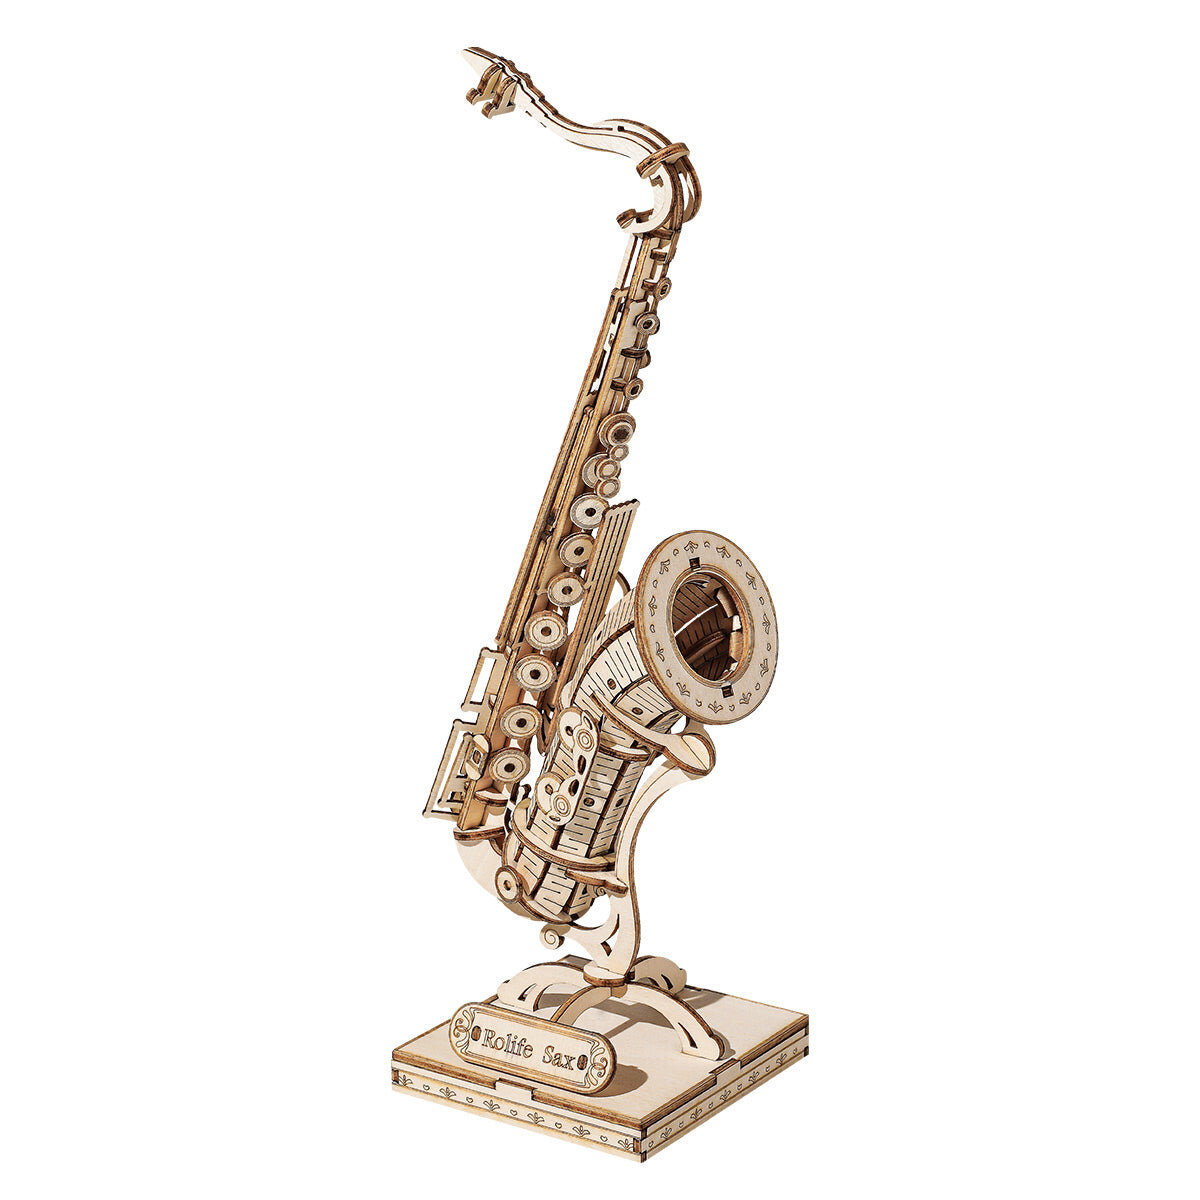 Drevené 3D puzzle - Saxofón Rolife TG309